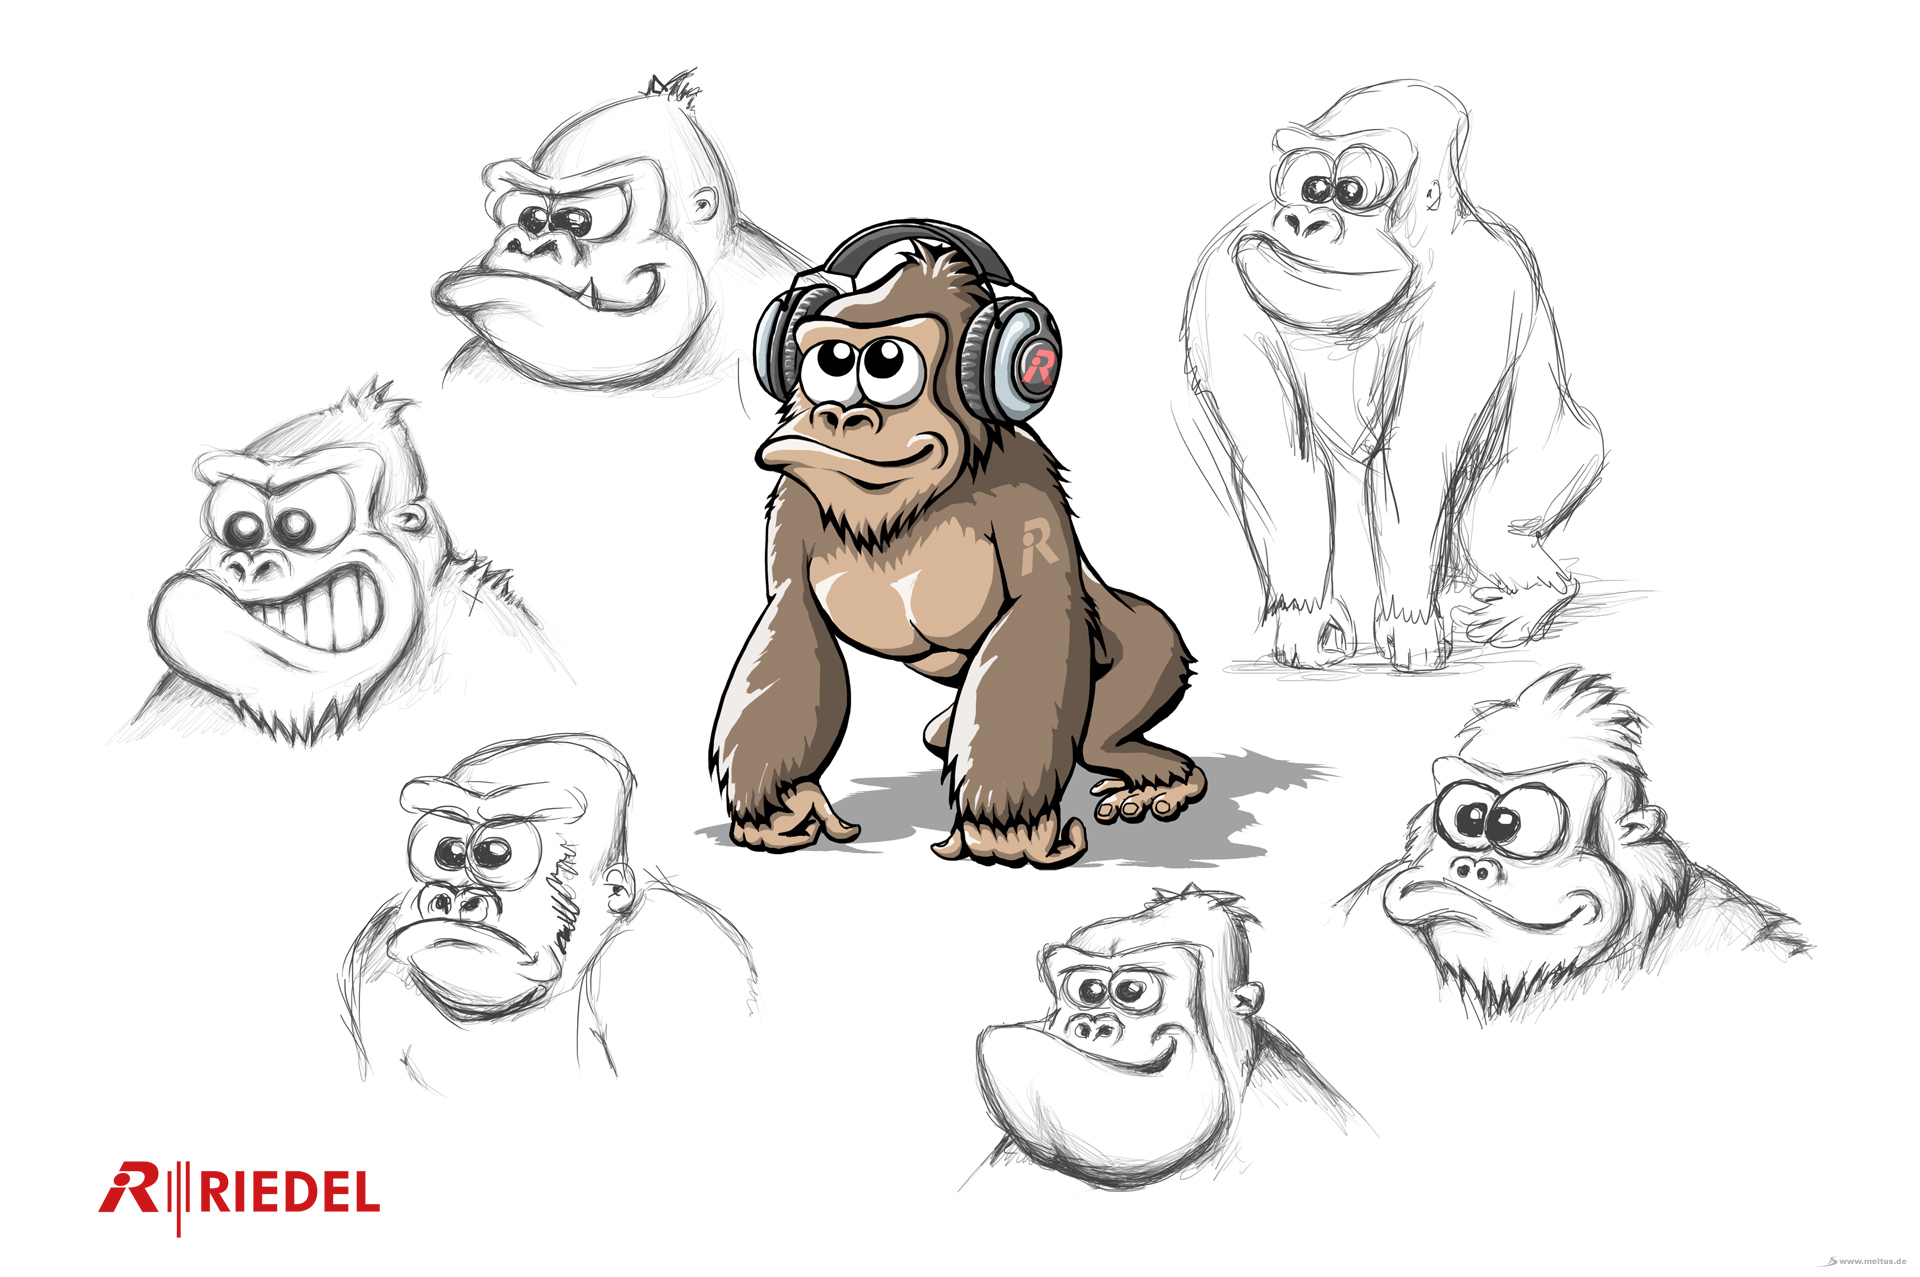 2D Cartoon: Riedel Gorilla - Gorilla Cartoon/Maskottchen Entwurf für Riedel.